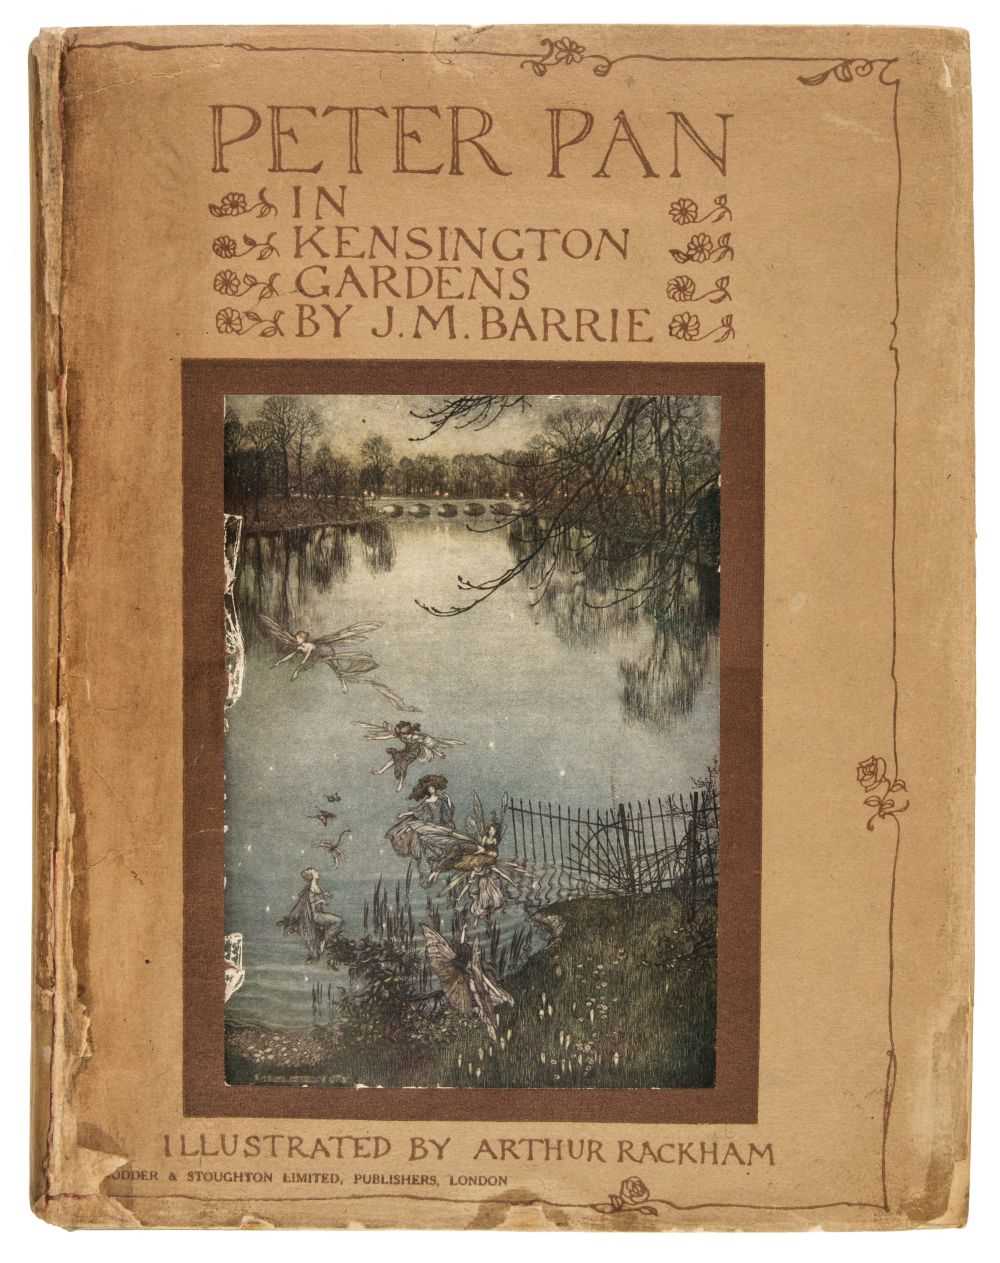 Lot 599 - Rackham (Arthur, illustrator). Peter Pan in Kensington Gardens from The Little White Bird